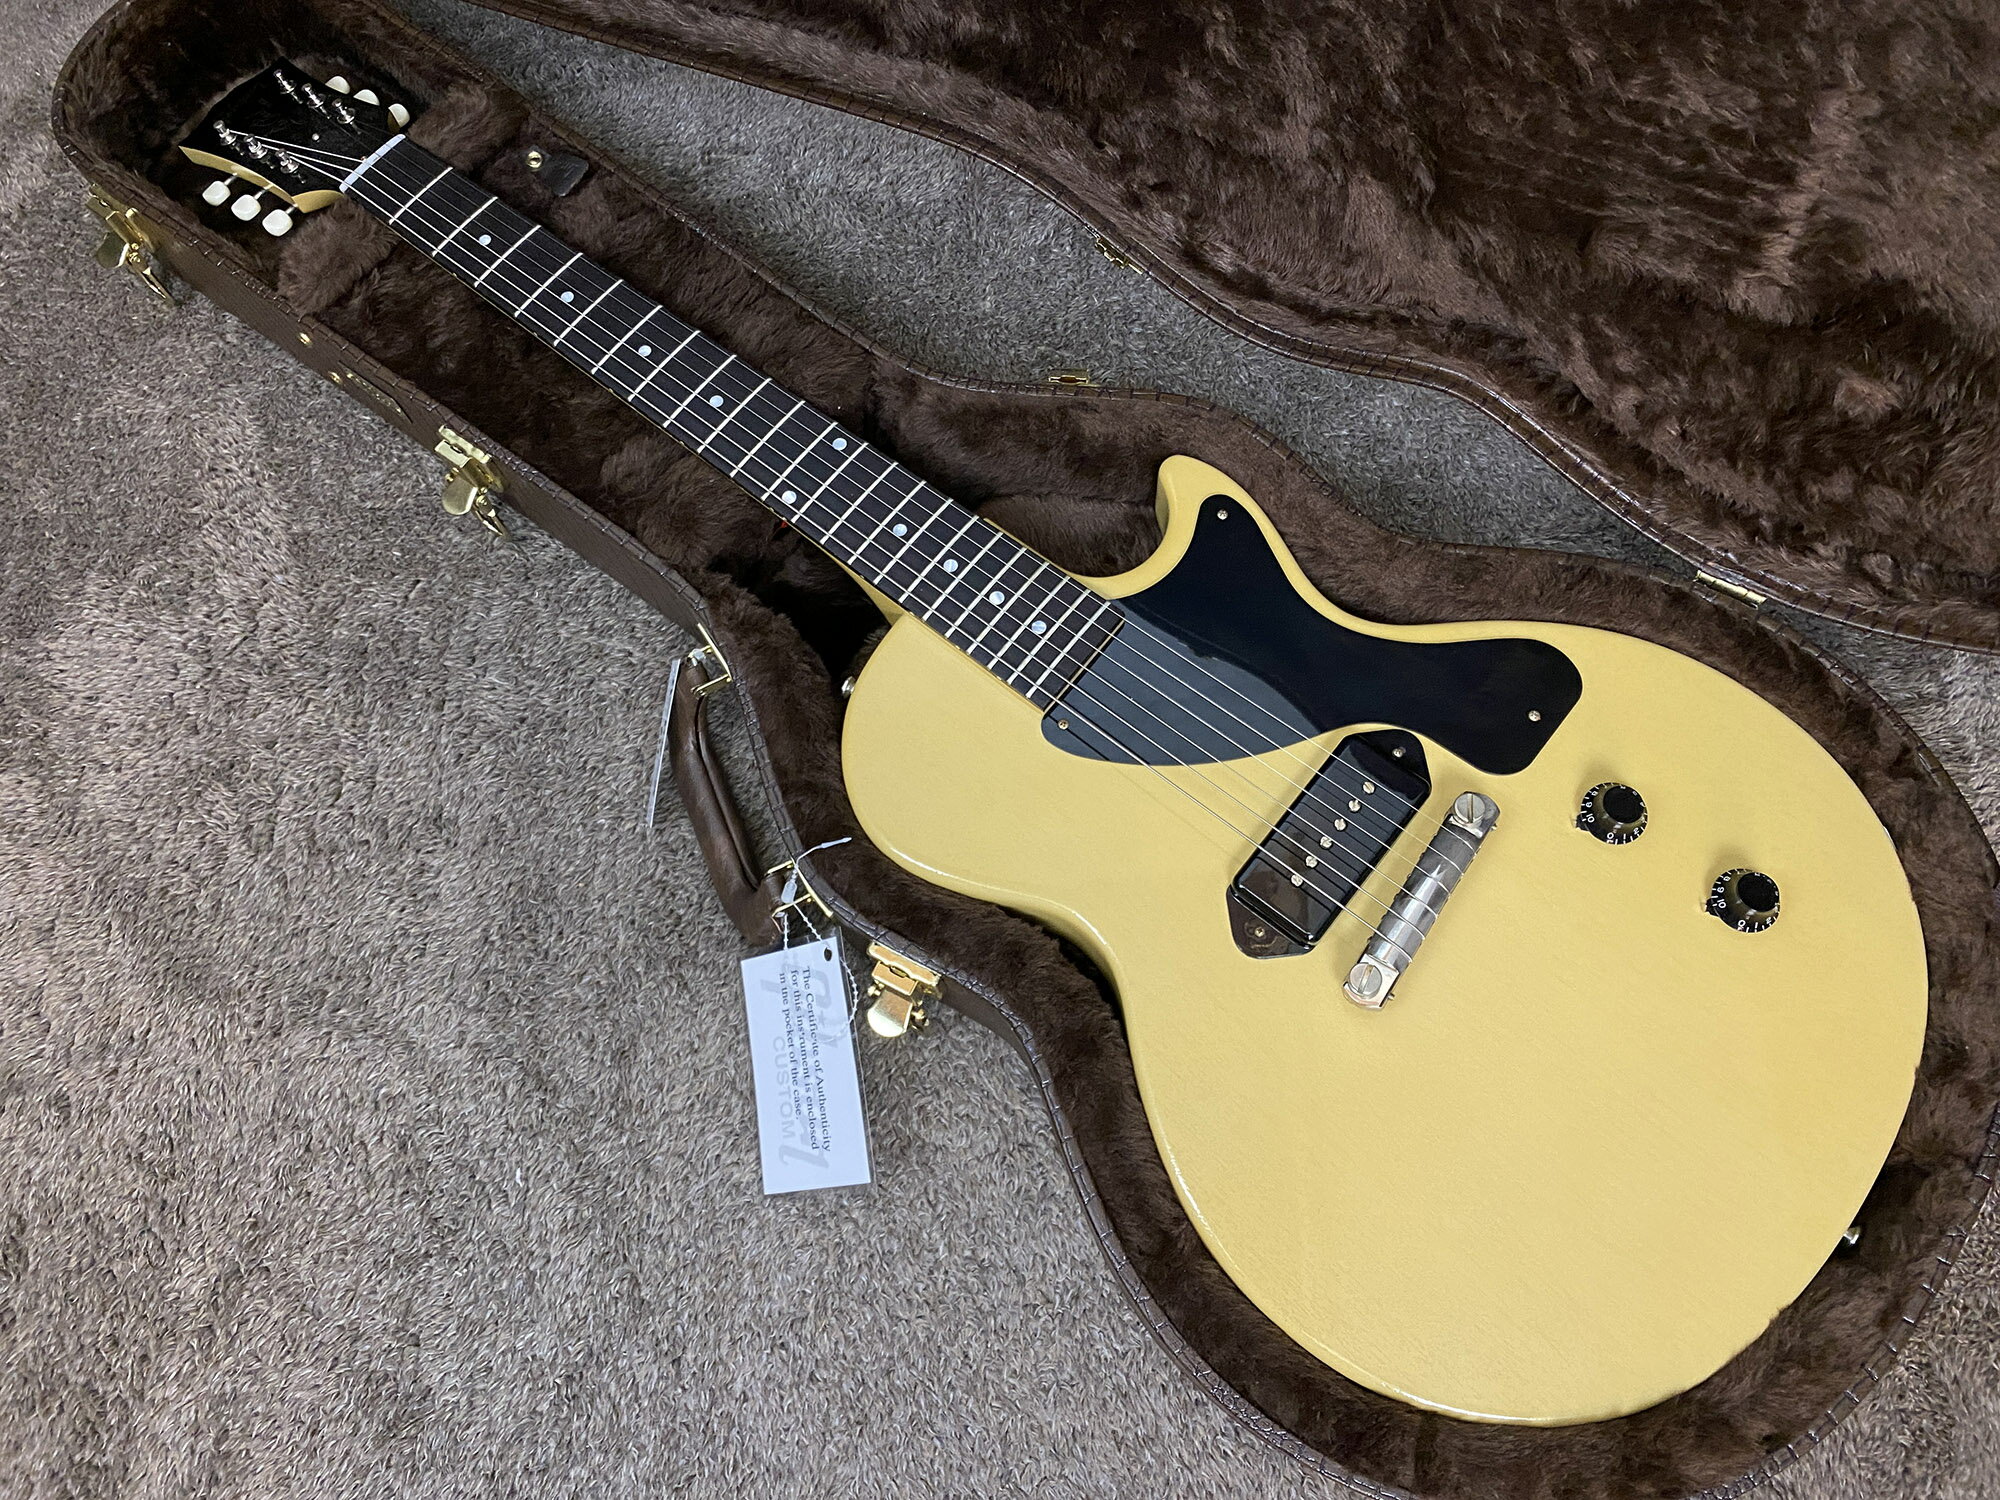 【送料無料】Gibson Custom Shop / 1957 Les Paul Junior Reissue VOS TV Yellow【新品】【楽器/エレキギター/Gibson Custom Shop/ギブソンカスタムショップ/1957 Les Paul Junior/レスポールジュニアジュニア/TV Yellow/TVイエロー】